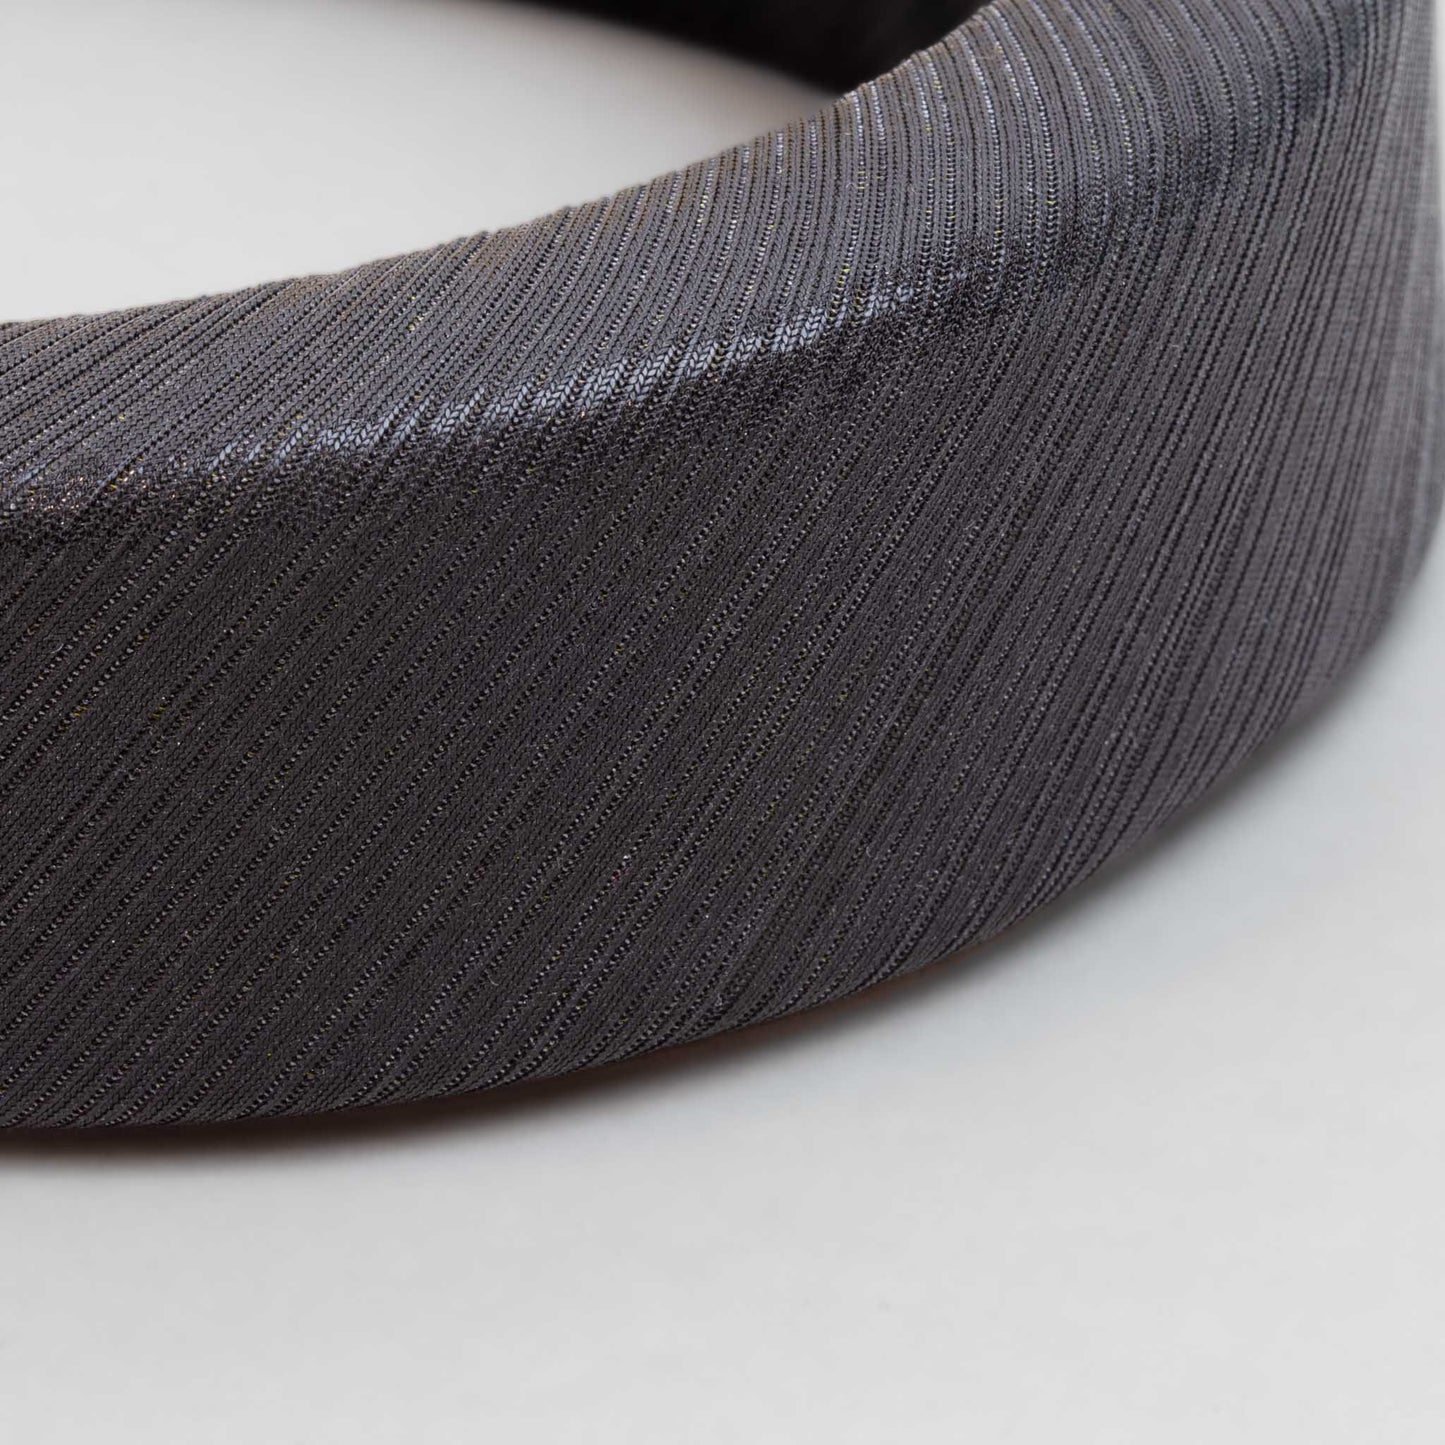 Cordelută de păr lată tip halo cu burete gros și material satinat strălucitor - Negru